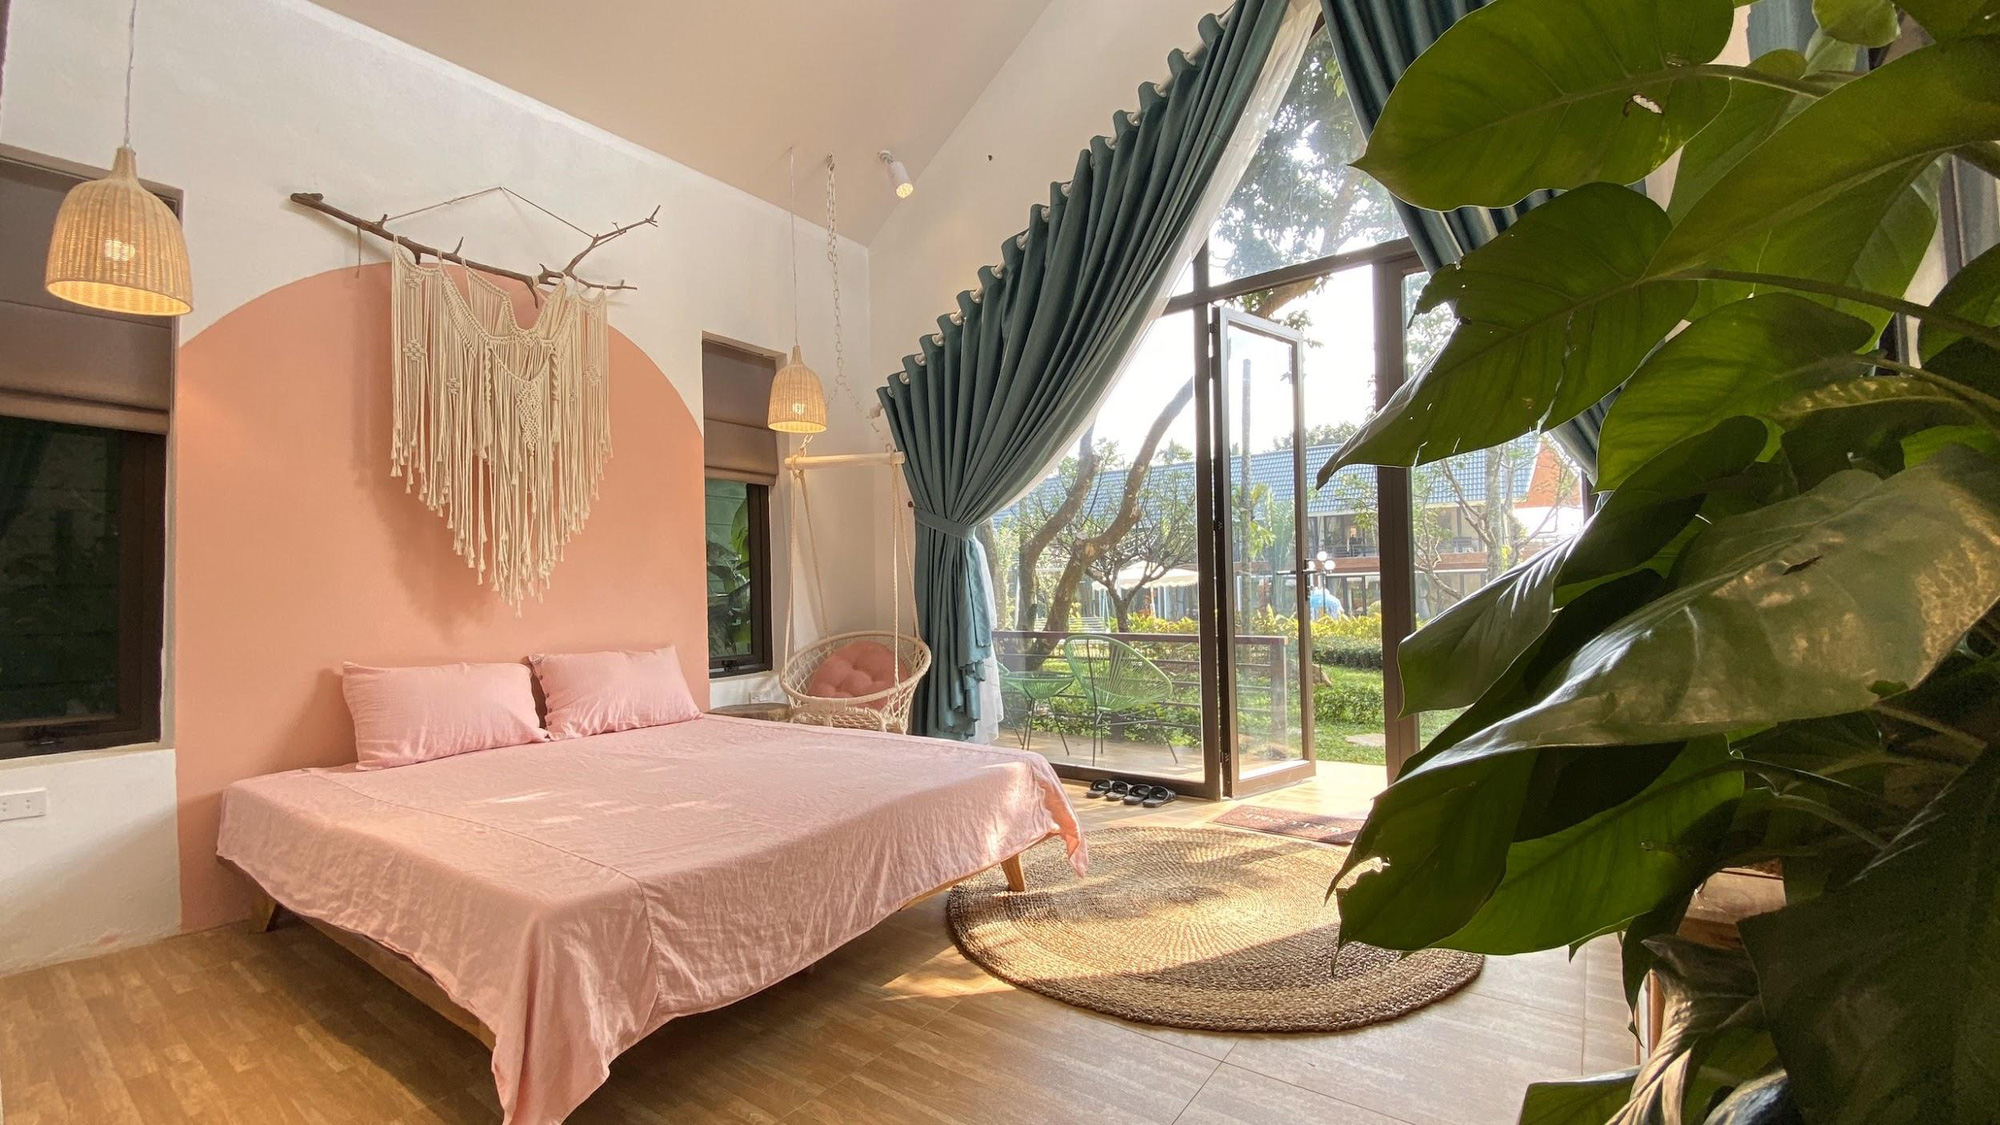 4 khu resort, villa gần Hà Nội cho cả gia đình nghỉ ngơi dịp lễ 2/9 đang được giảm giá - Ảnh 6.